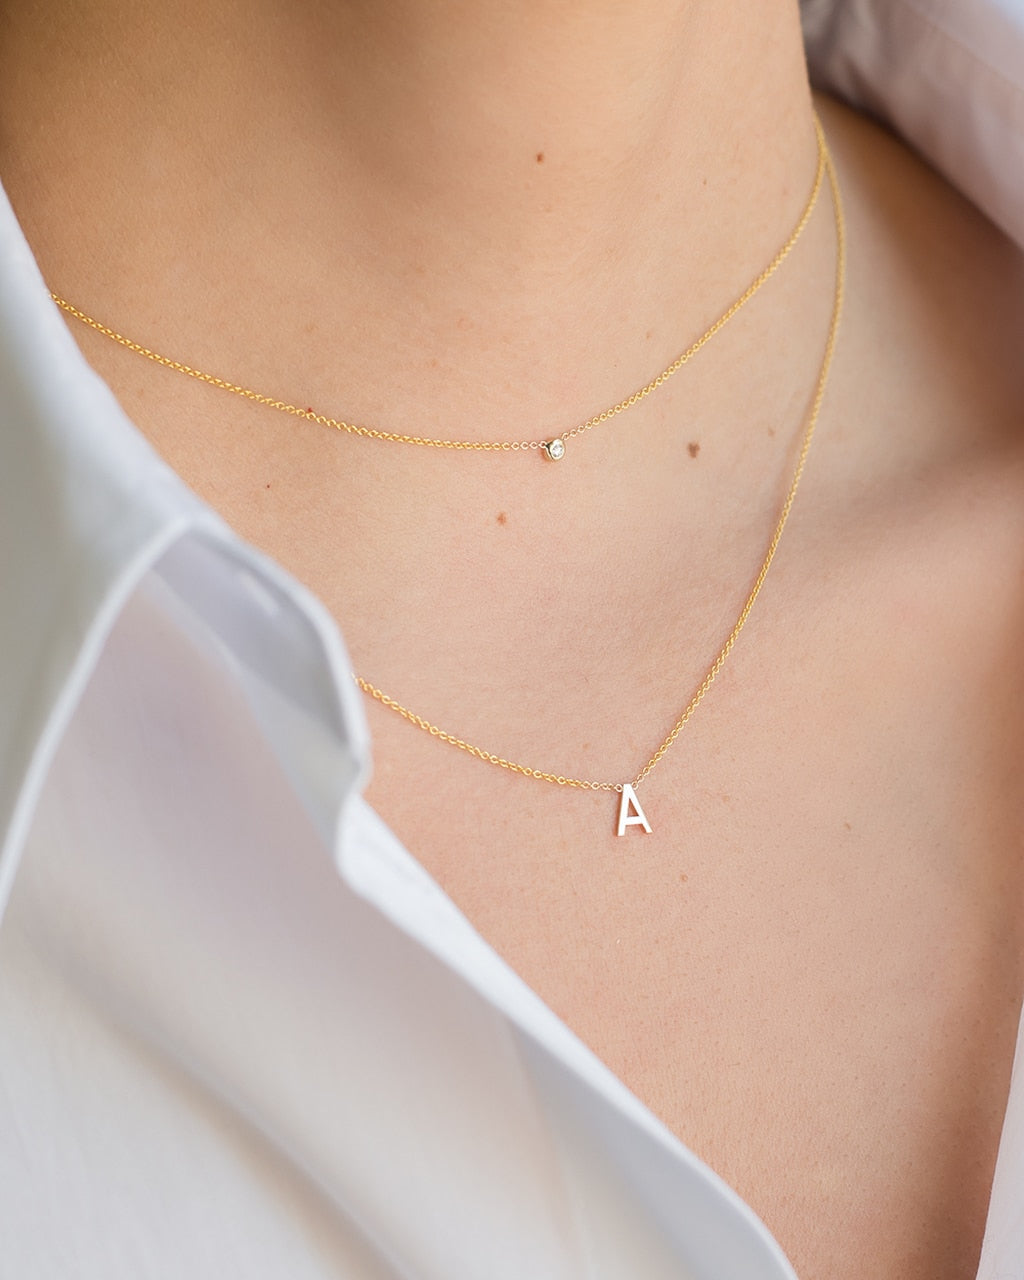 Mini Bezel Diamond Necklace - Zoe Lev Jewelry